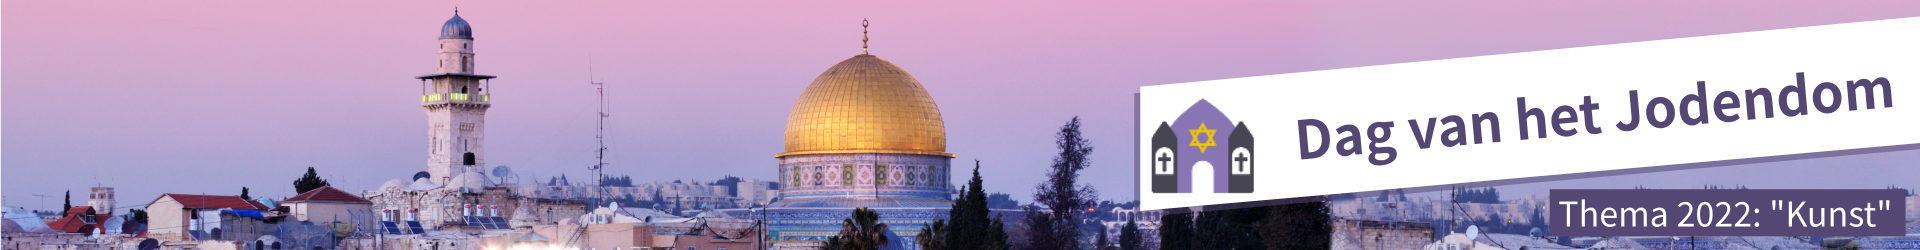 Categorie: Dag van het Jodendom 2014